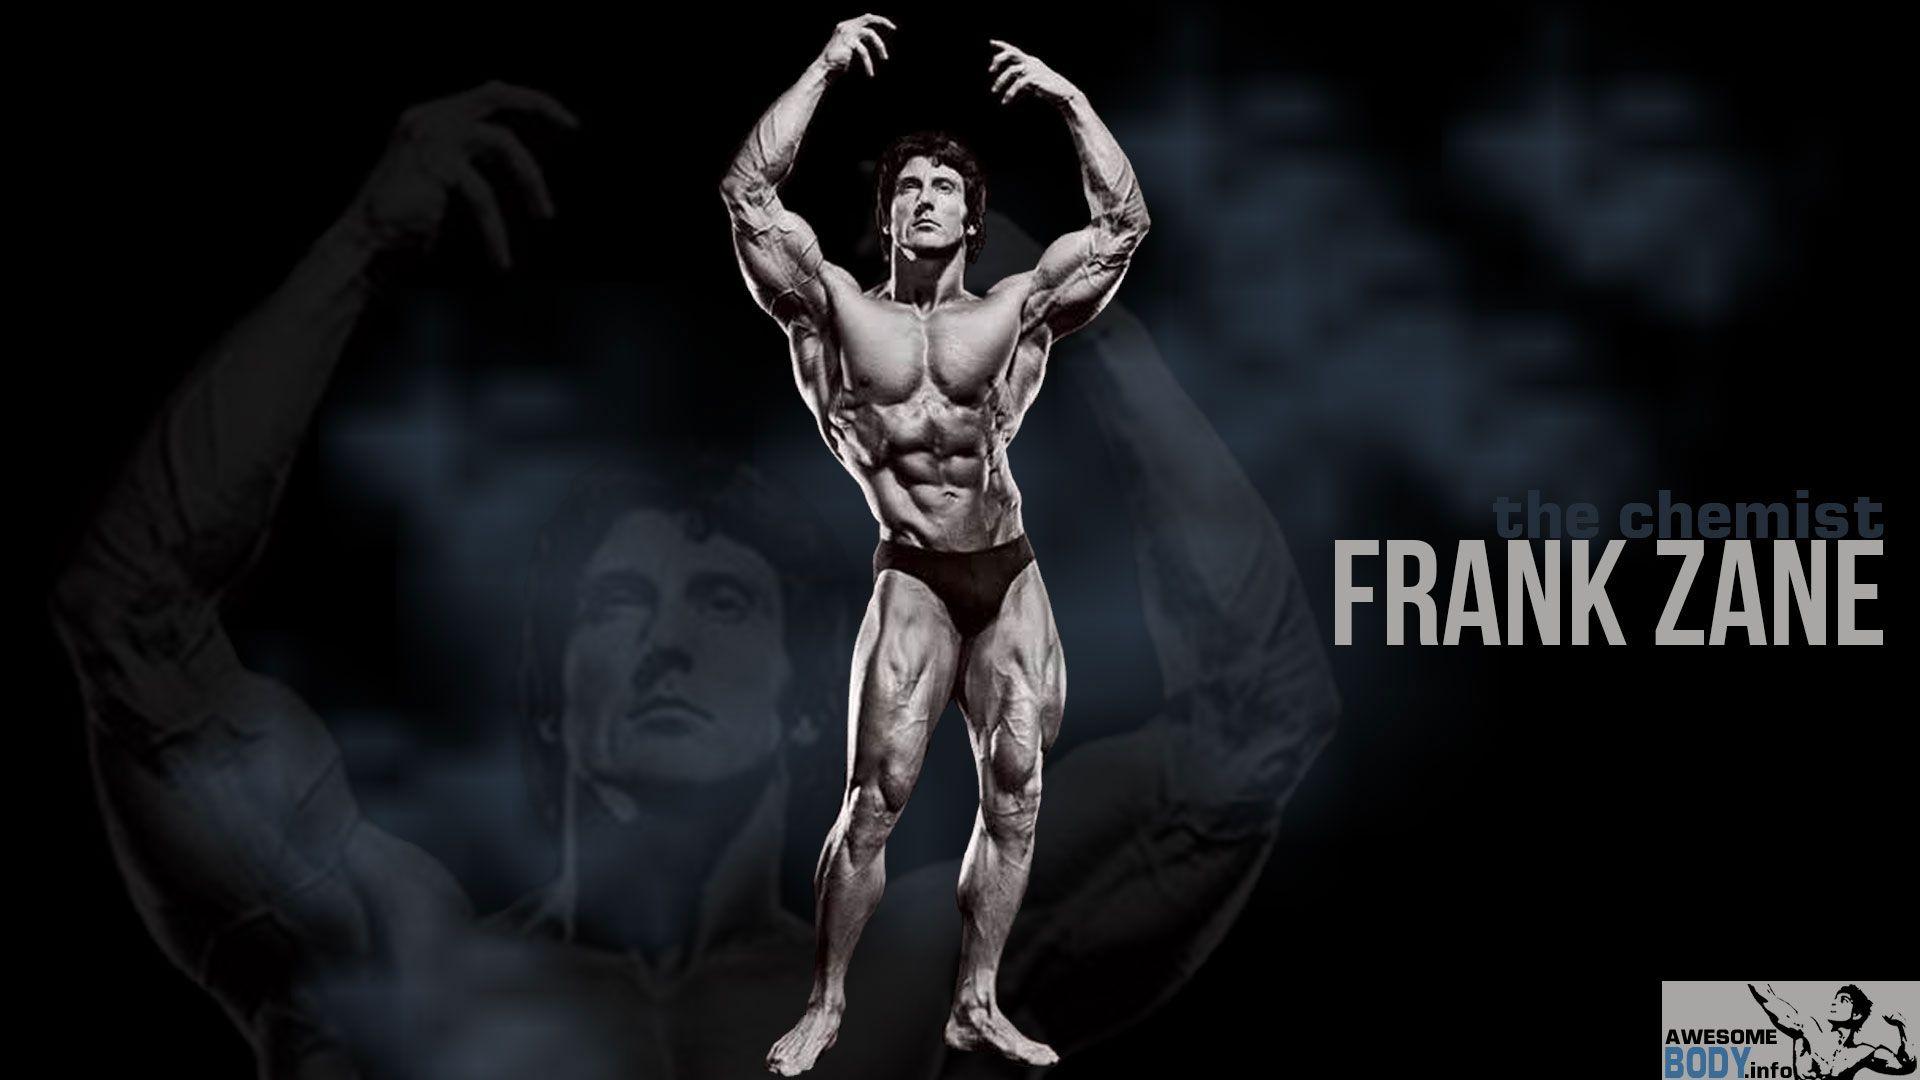 frank zane Motivation. Frank